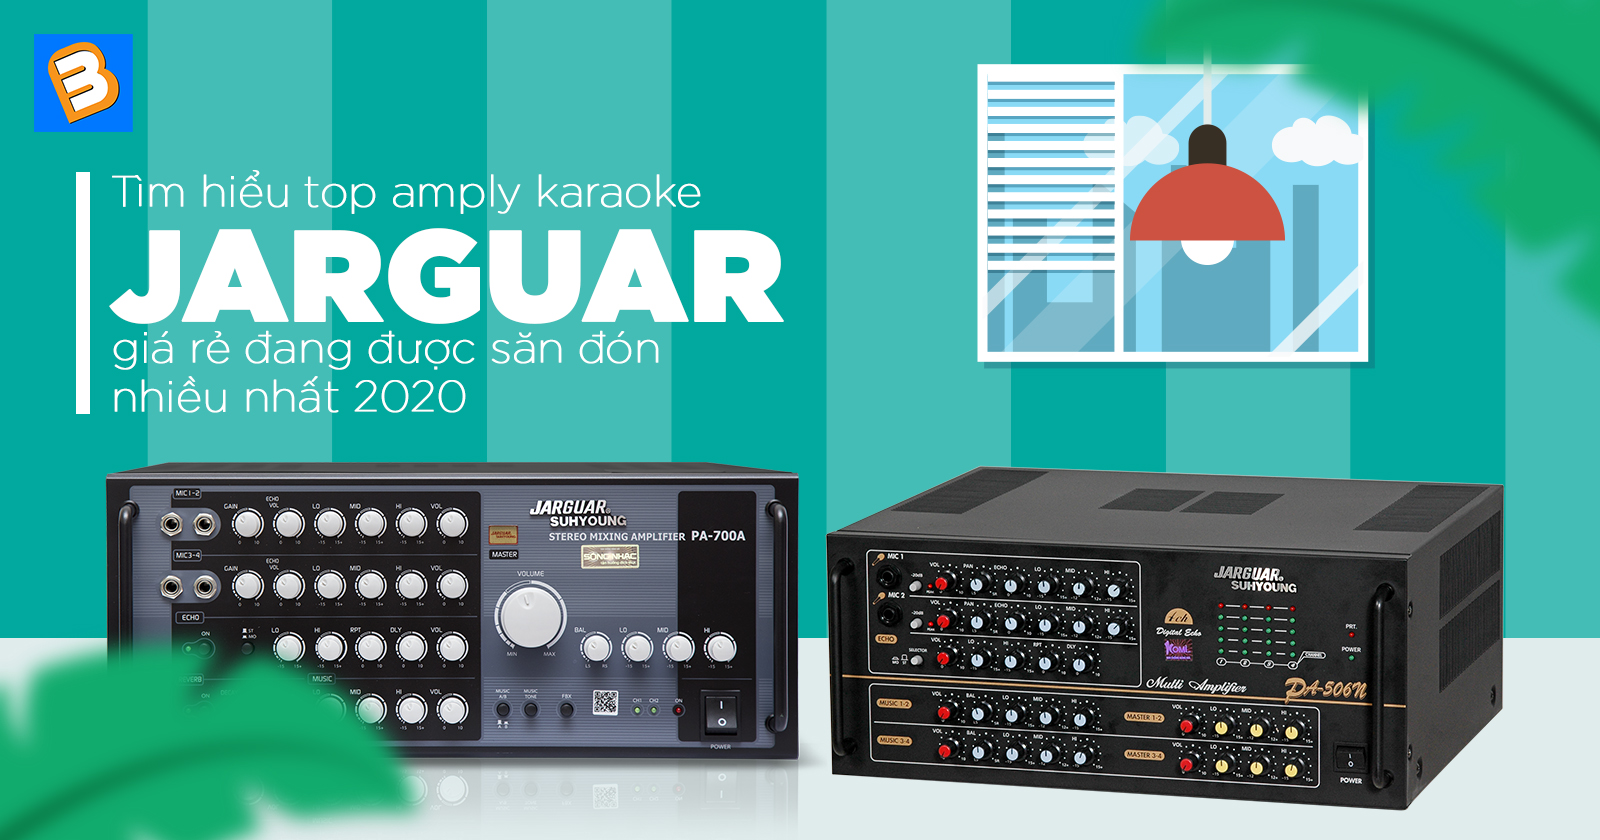 Tìm hiểu top amply karaoke Jarguar giá rẻ đang được săn đón nhiều nhất 2020